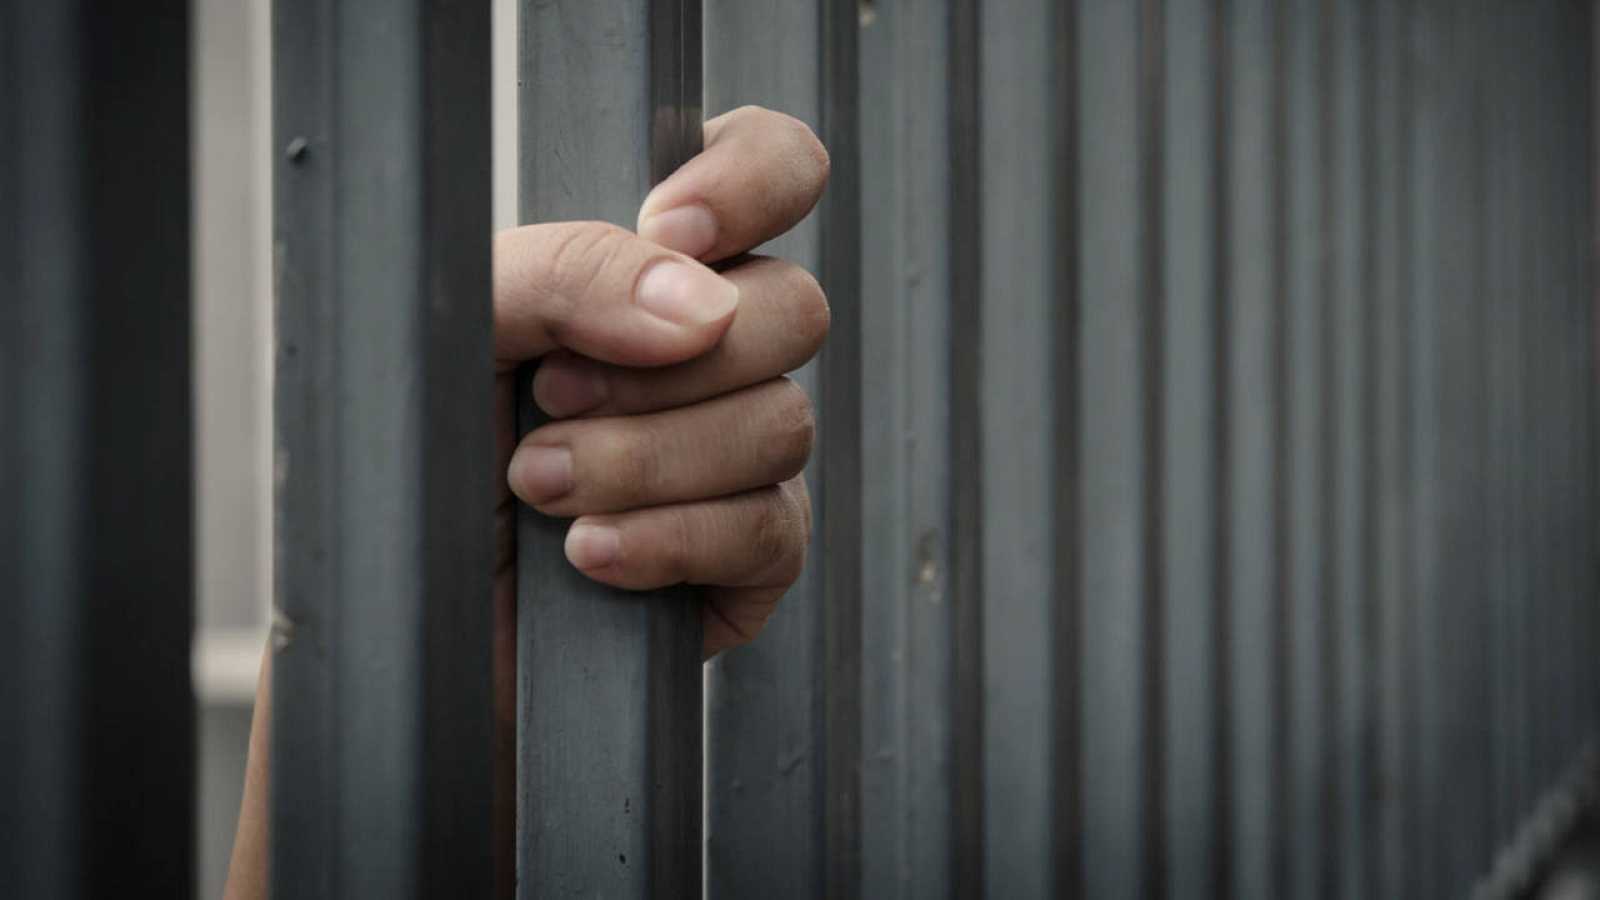 Condena de ocho a diez años de prisión a jóvenes que torturaron y asesinaron a ex compañero de escuela